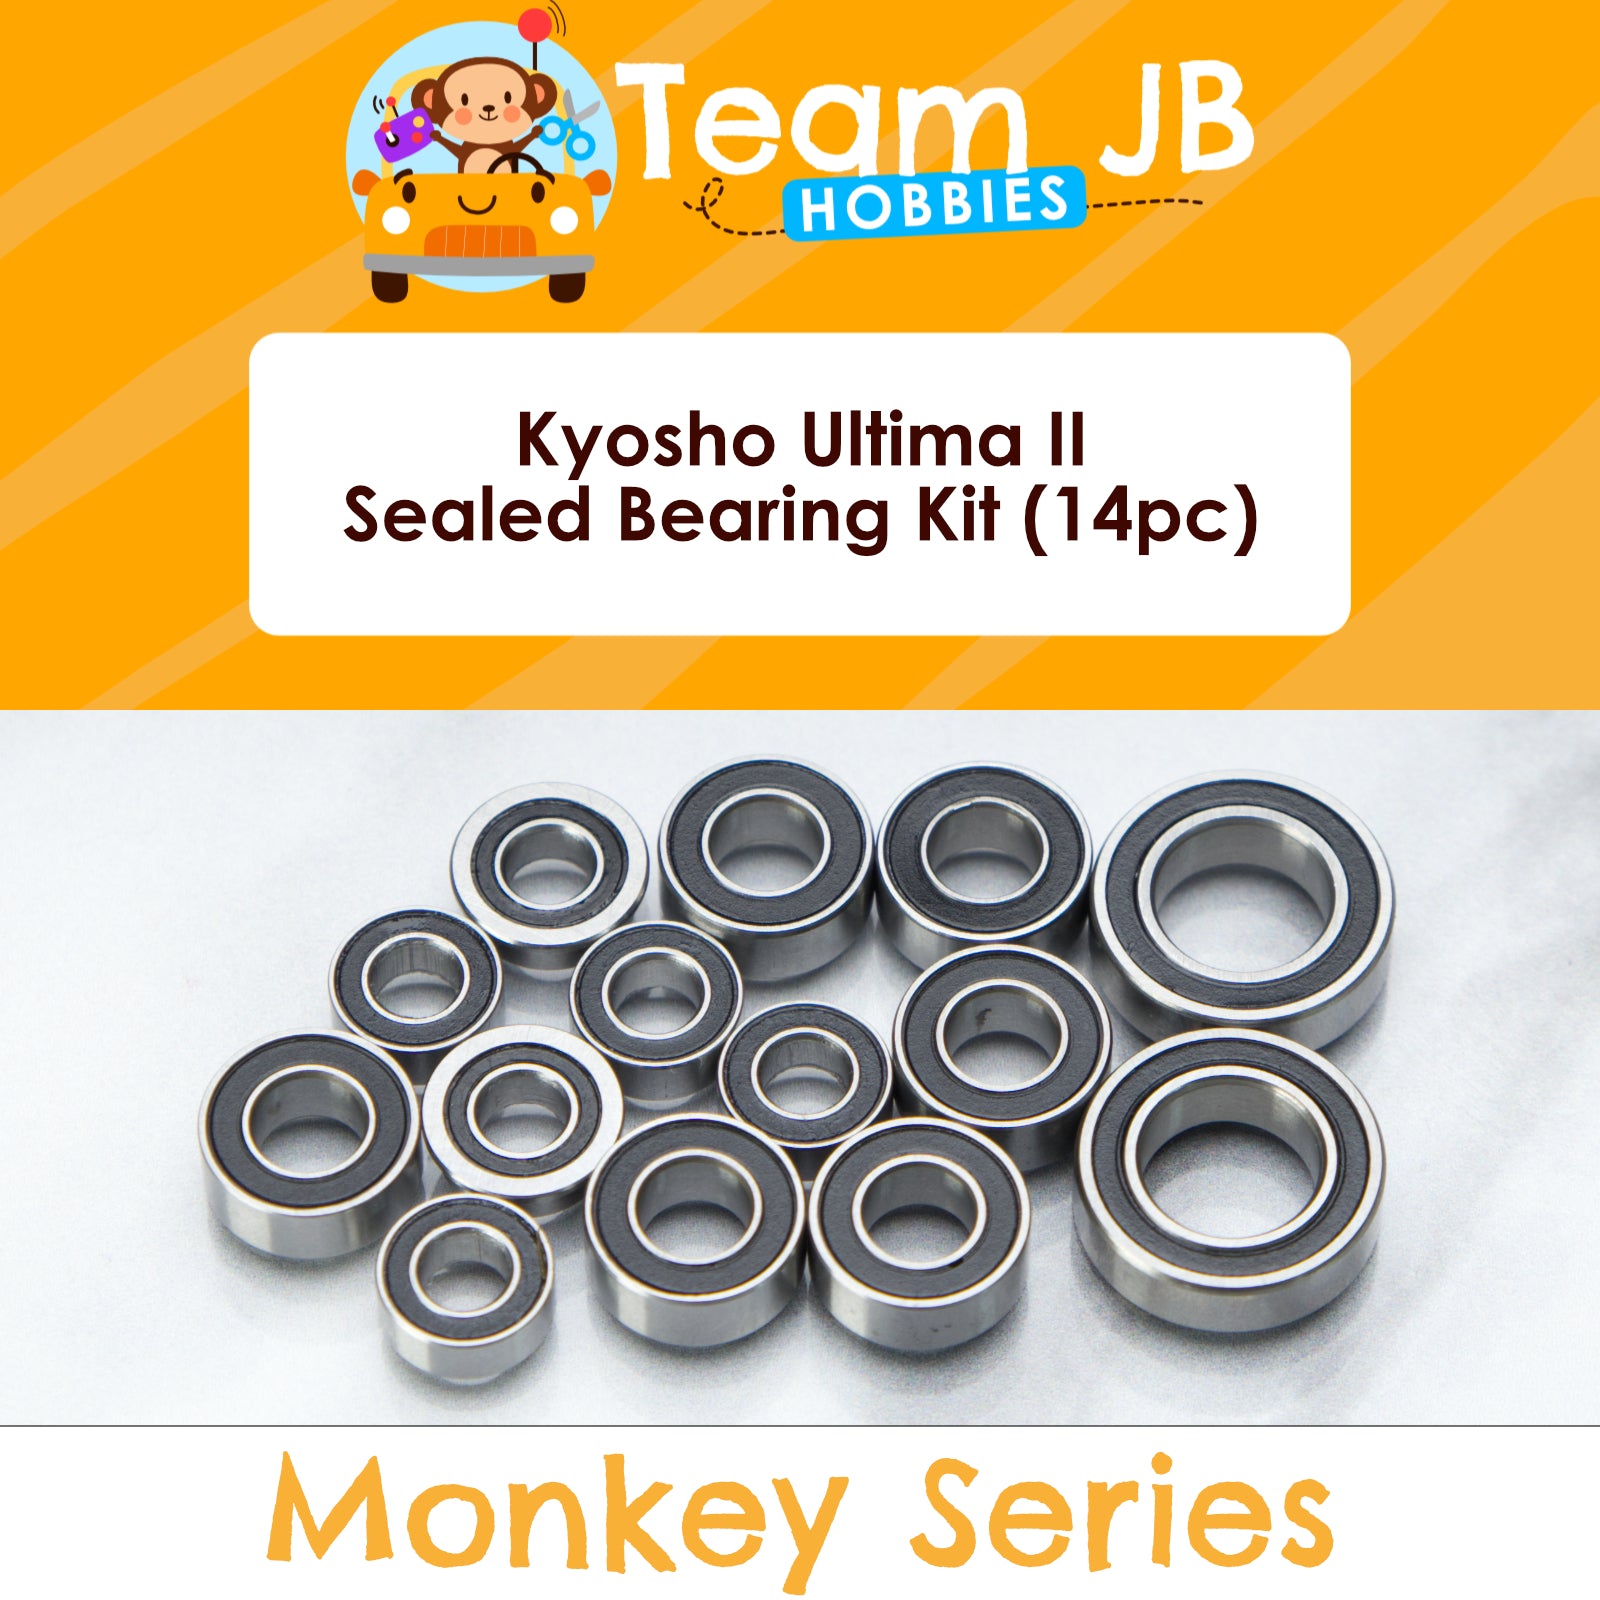 Kyosho Ultima II - Sealed Bearing Kit